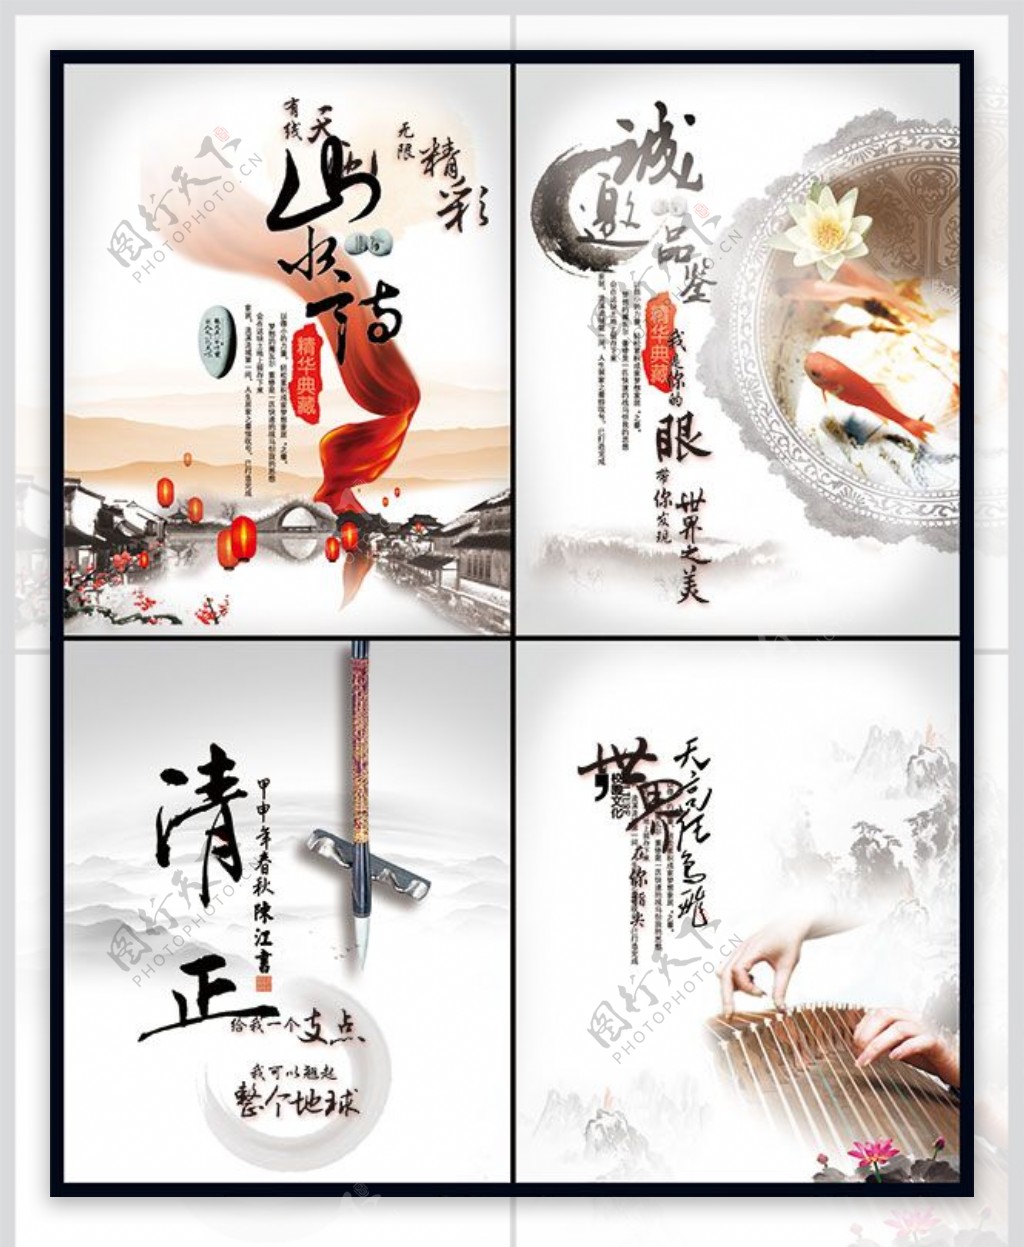 中国风文化海报设计模板psd素材下载